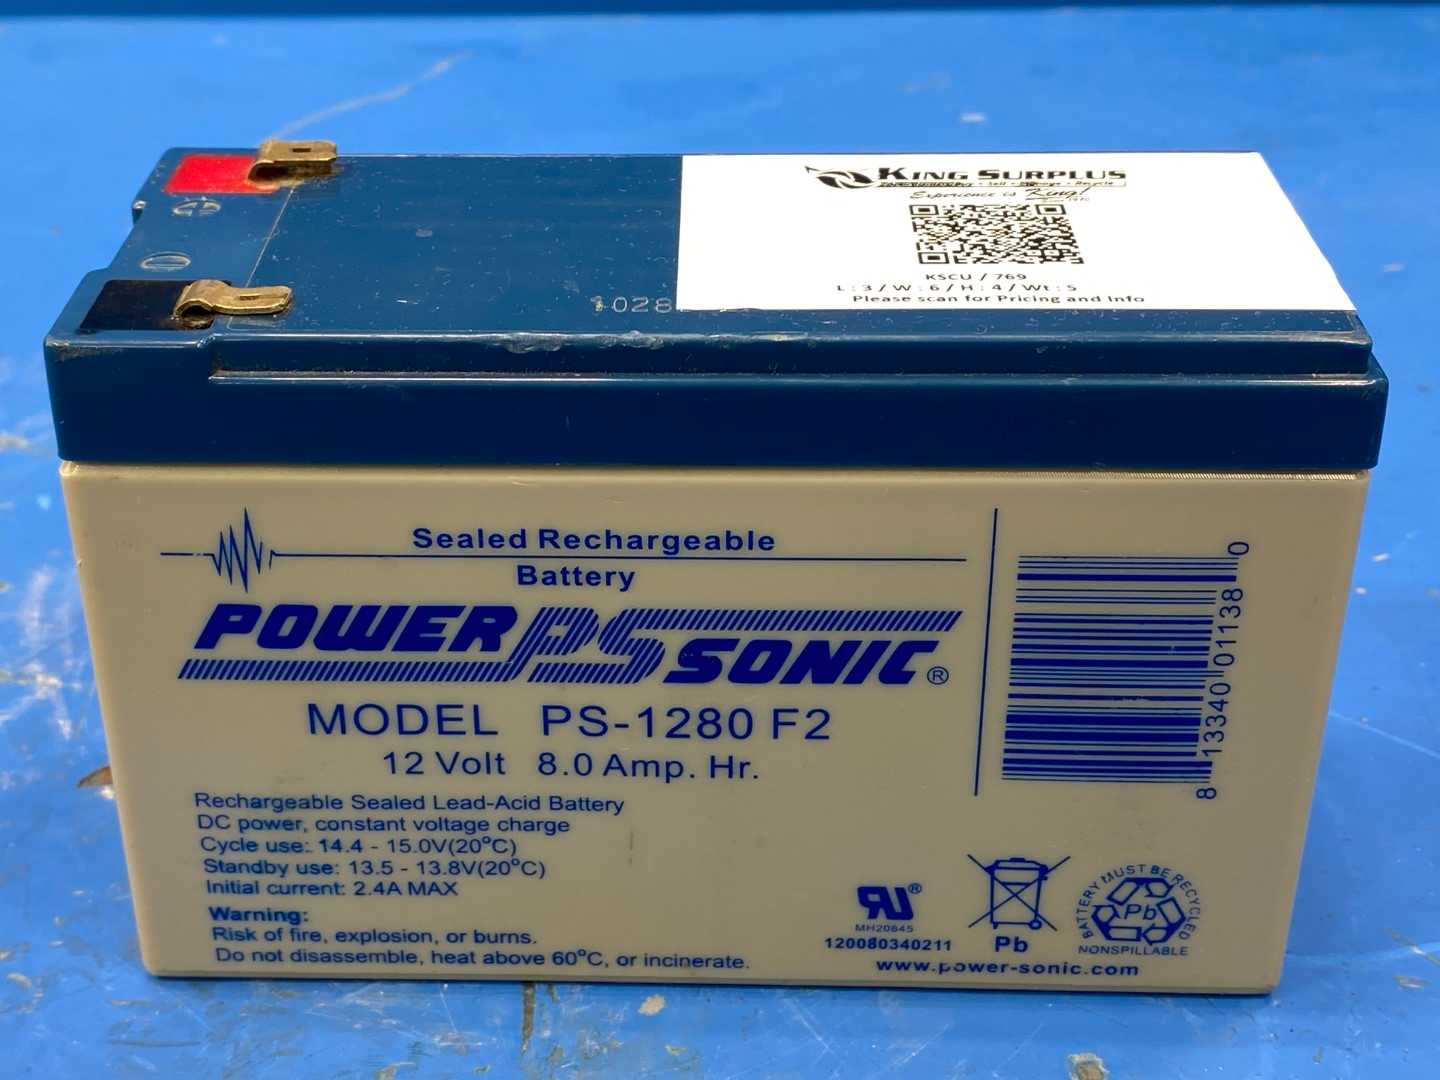 Power Sonic Sealed Rechargable Battery 12V Model PS-1280 F2 